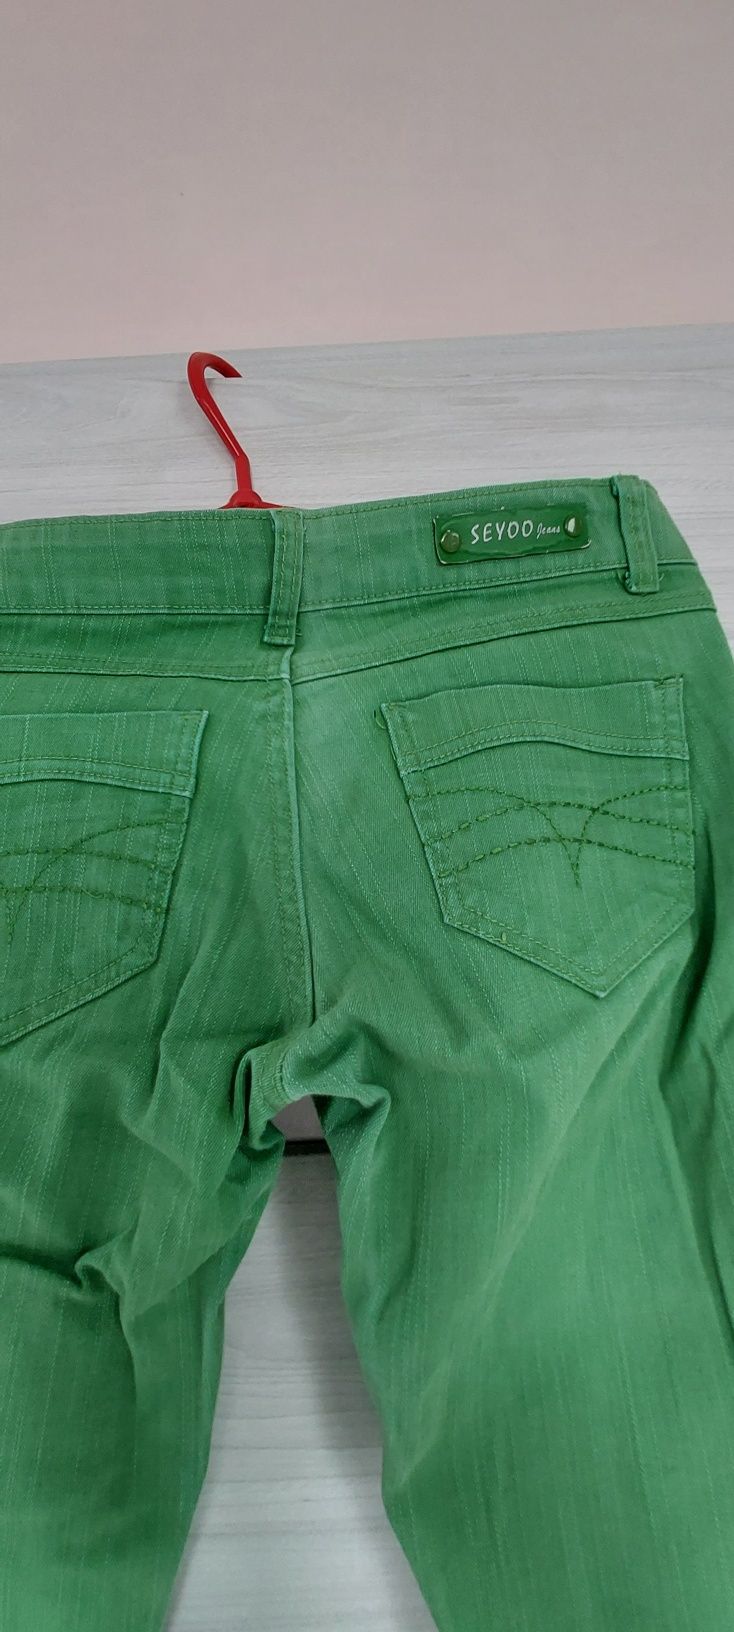 Spodnie jeansowe dżinsowe dziny rurki S biodrowki  seyoo